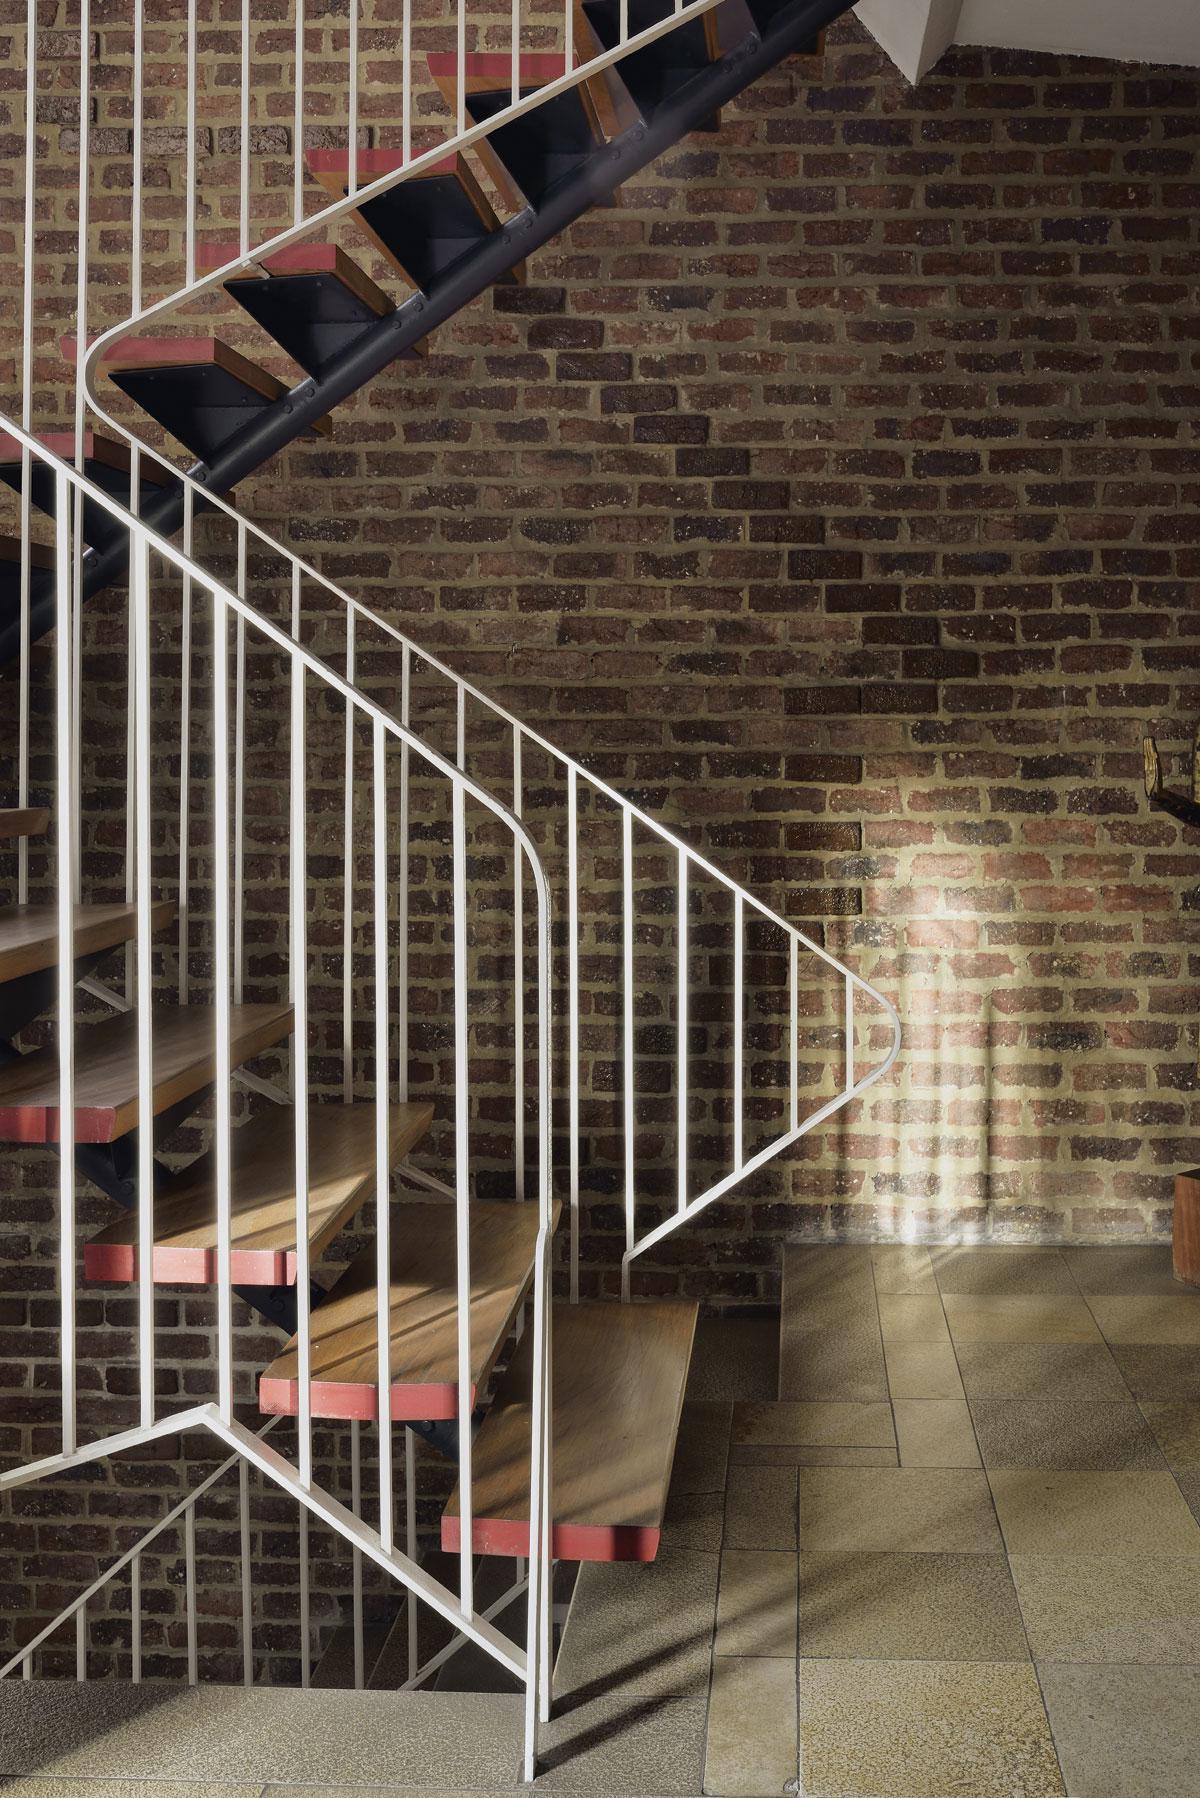 La cage d’escalier ouverte est en briques nues, brutes et texturées. Elles contrastent avec le détail raffiné des contremarches rouge corail de l’escalier suspendu.